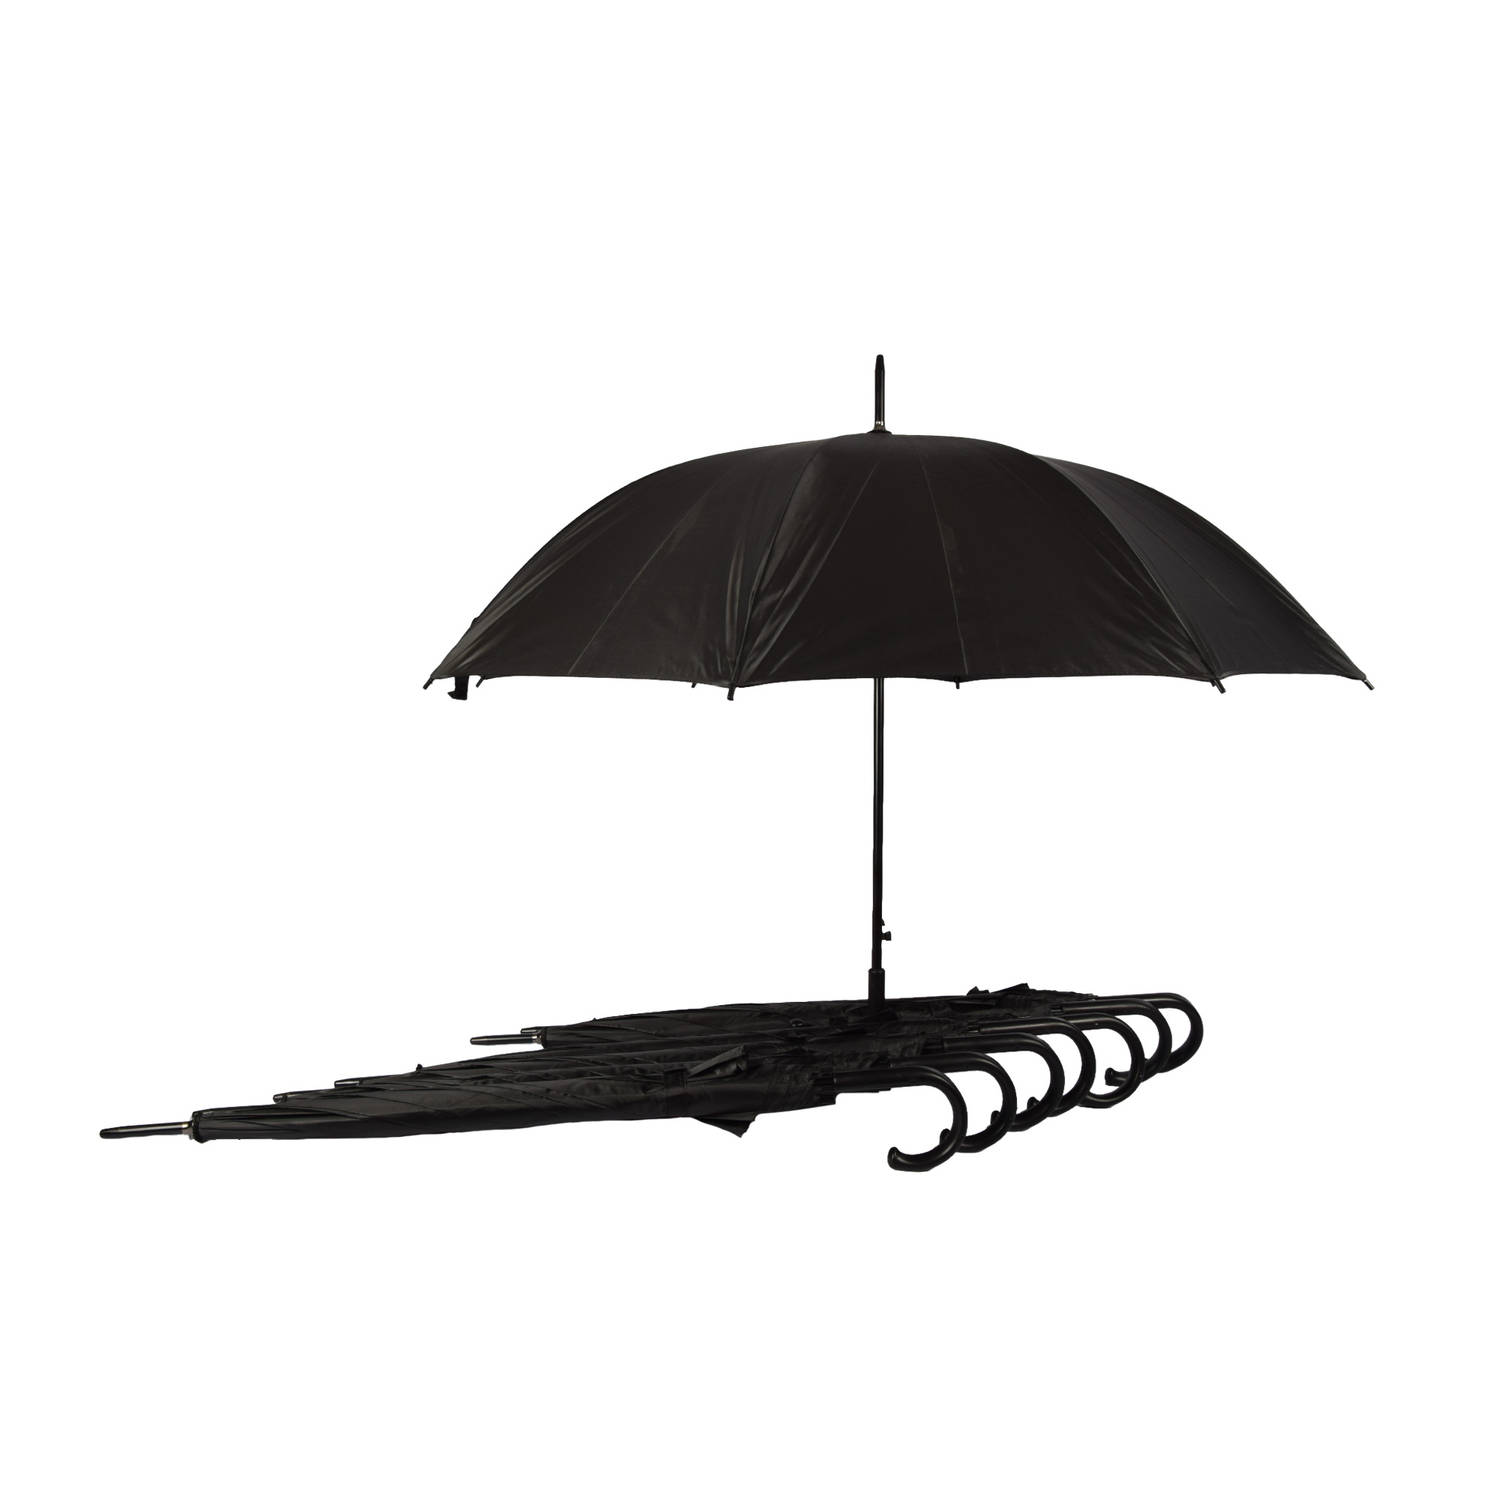 Set van 8 Zwarte Opvouwbare Paraplu's - Automatisch, Windproof - Heren en Dames - Polyester/Aluminium - Kamperen & Outdoor – 115cm Diameter